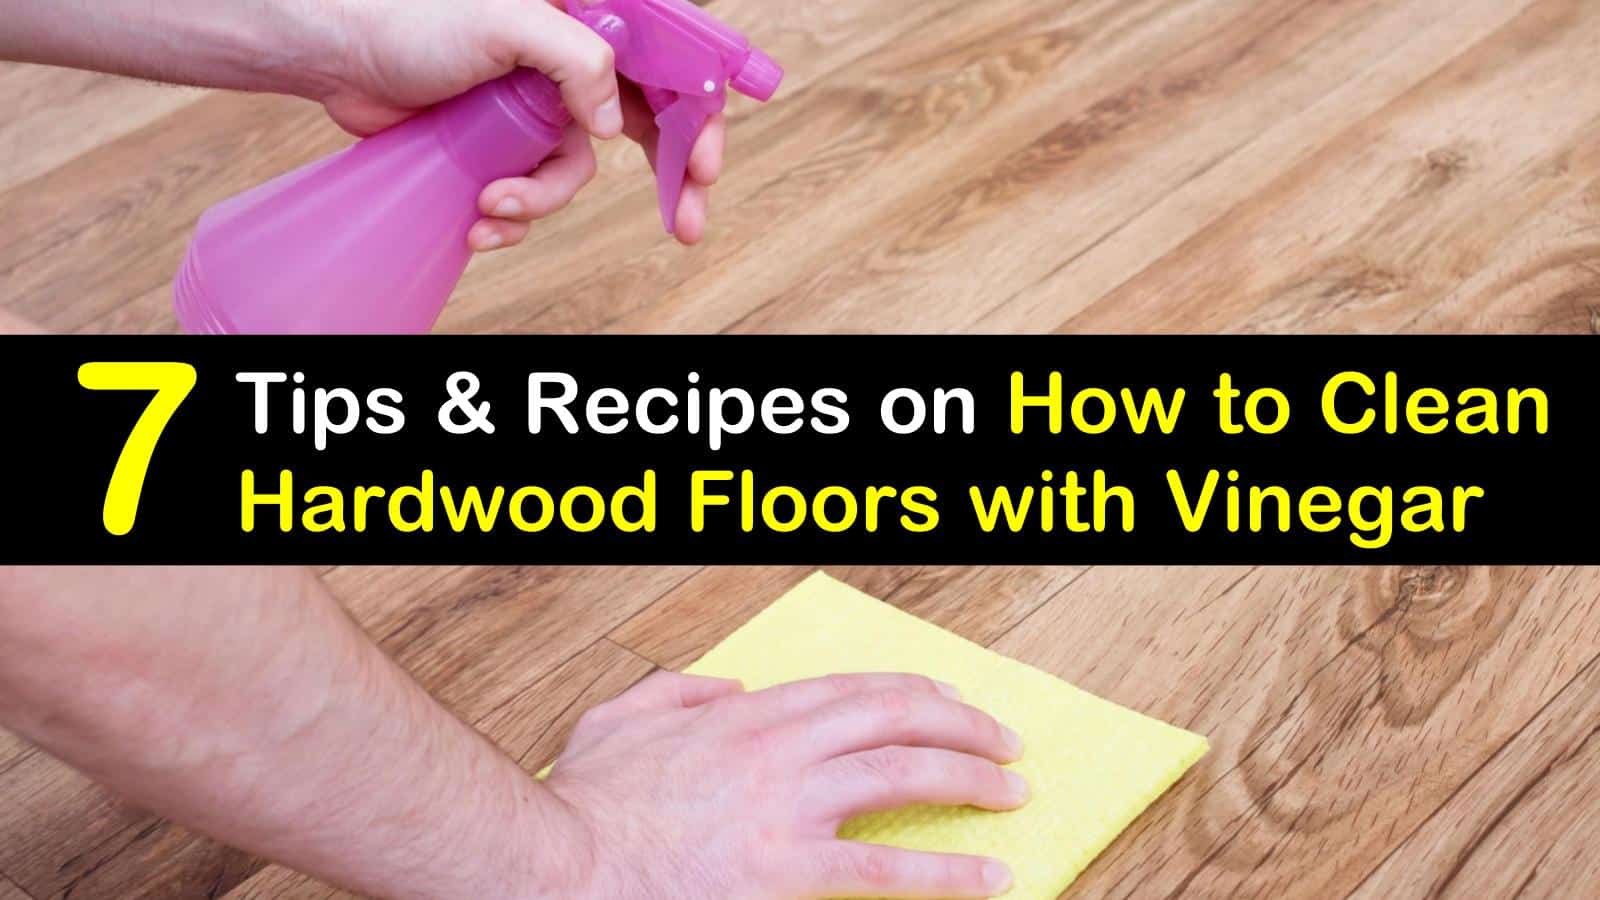 Clean Hardwood Floors With Vinegar, Vinegar Mixture For Cleaning Laminate Floors